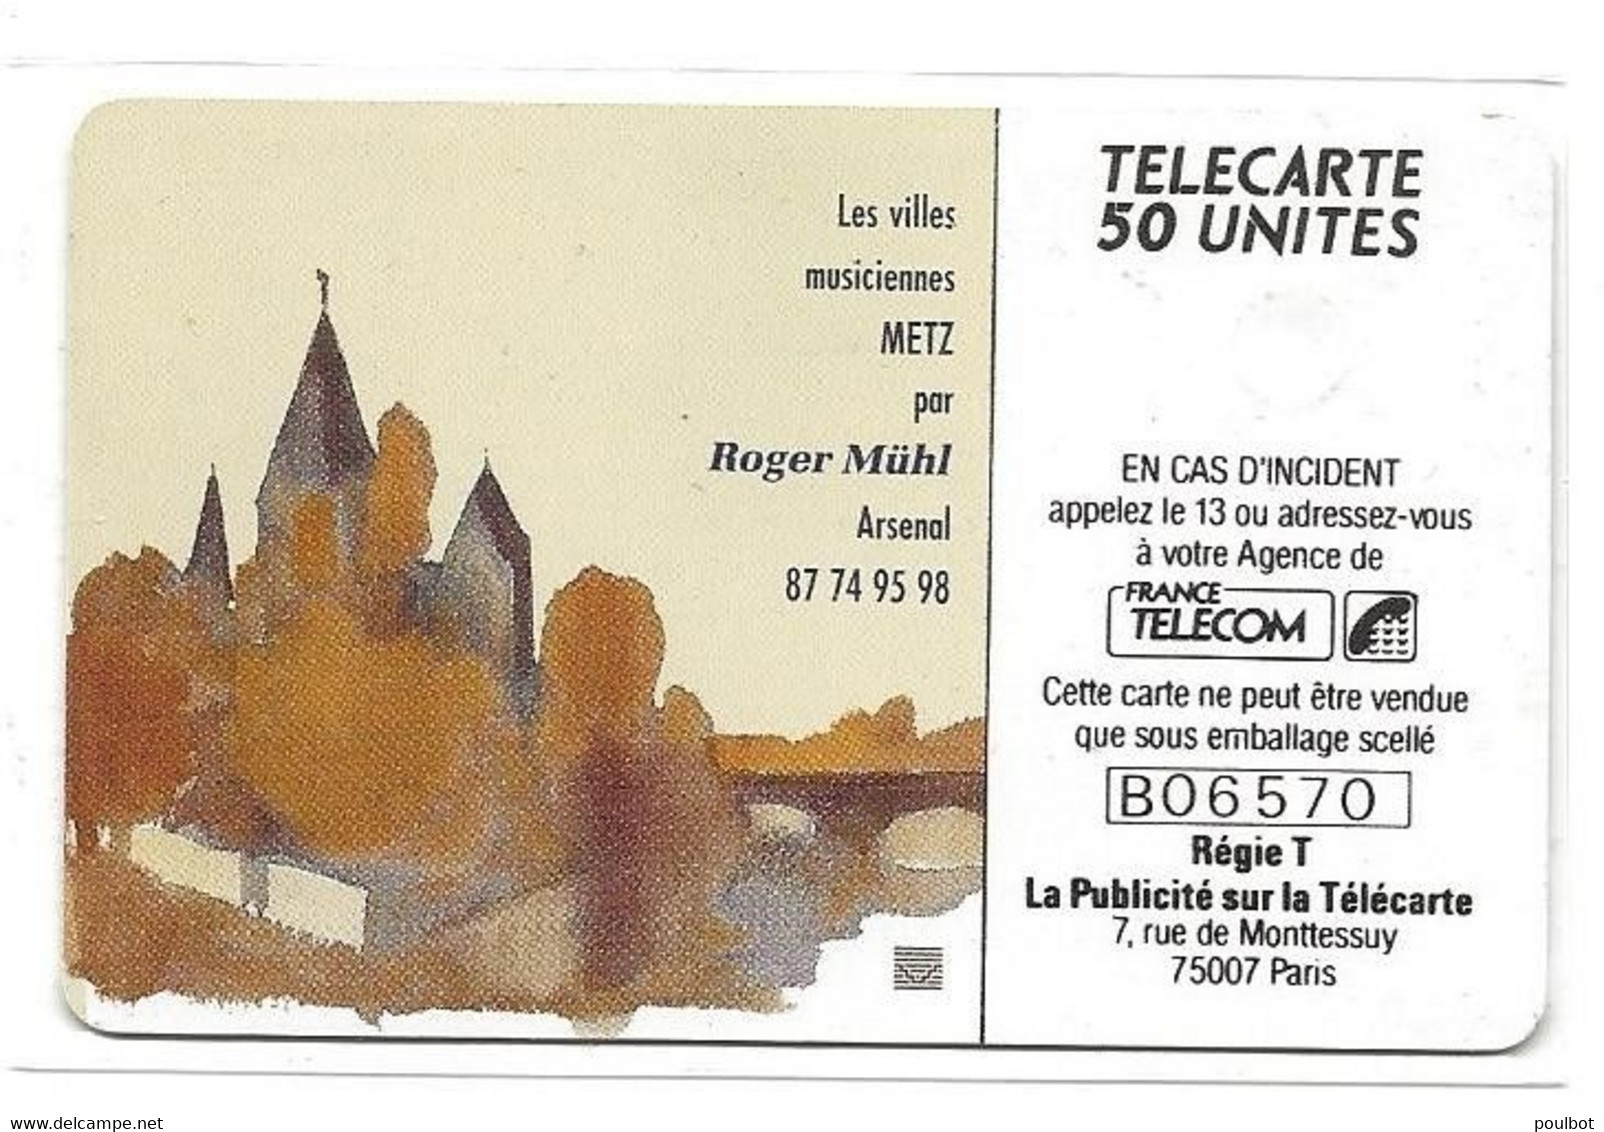 Télécarte F126 Metz Ville Musicienne - 1990